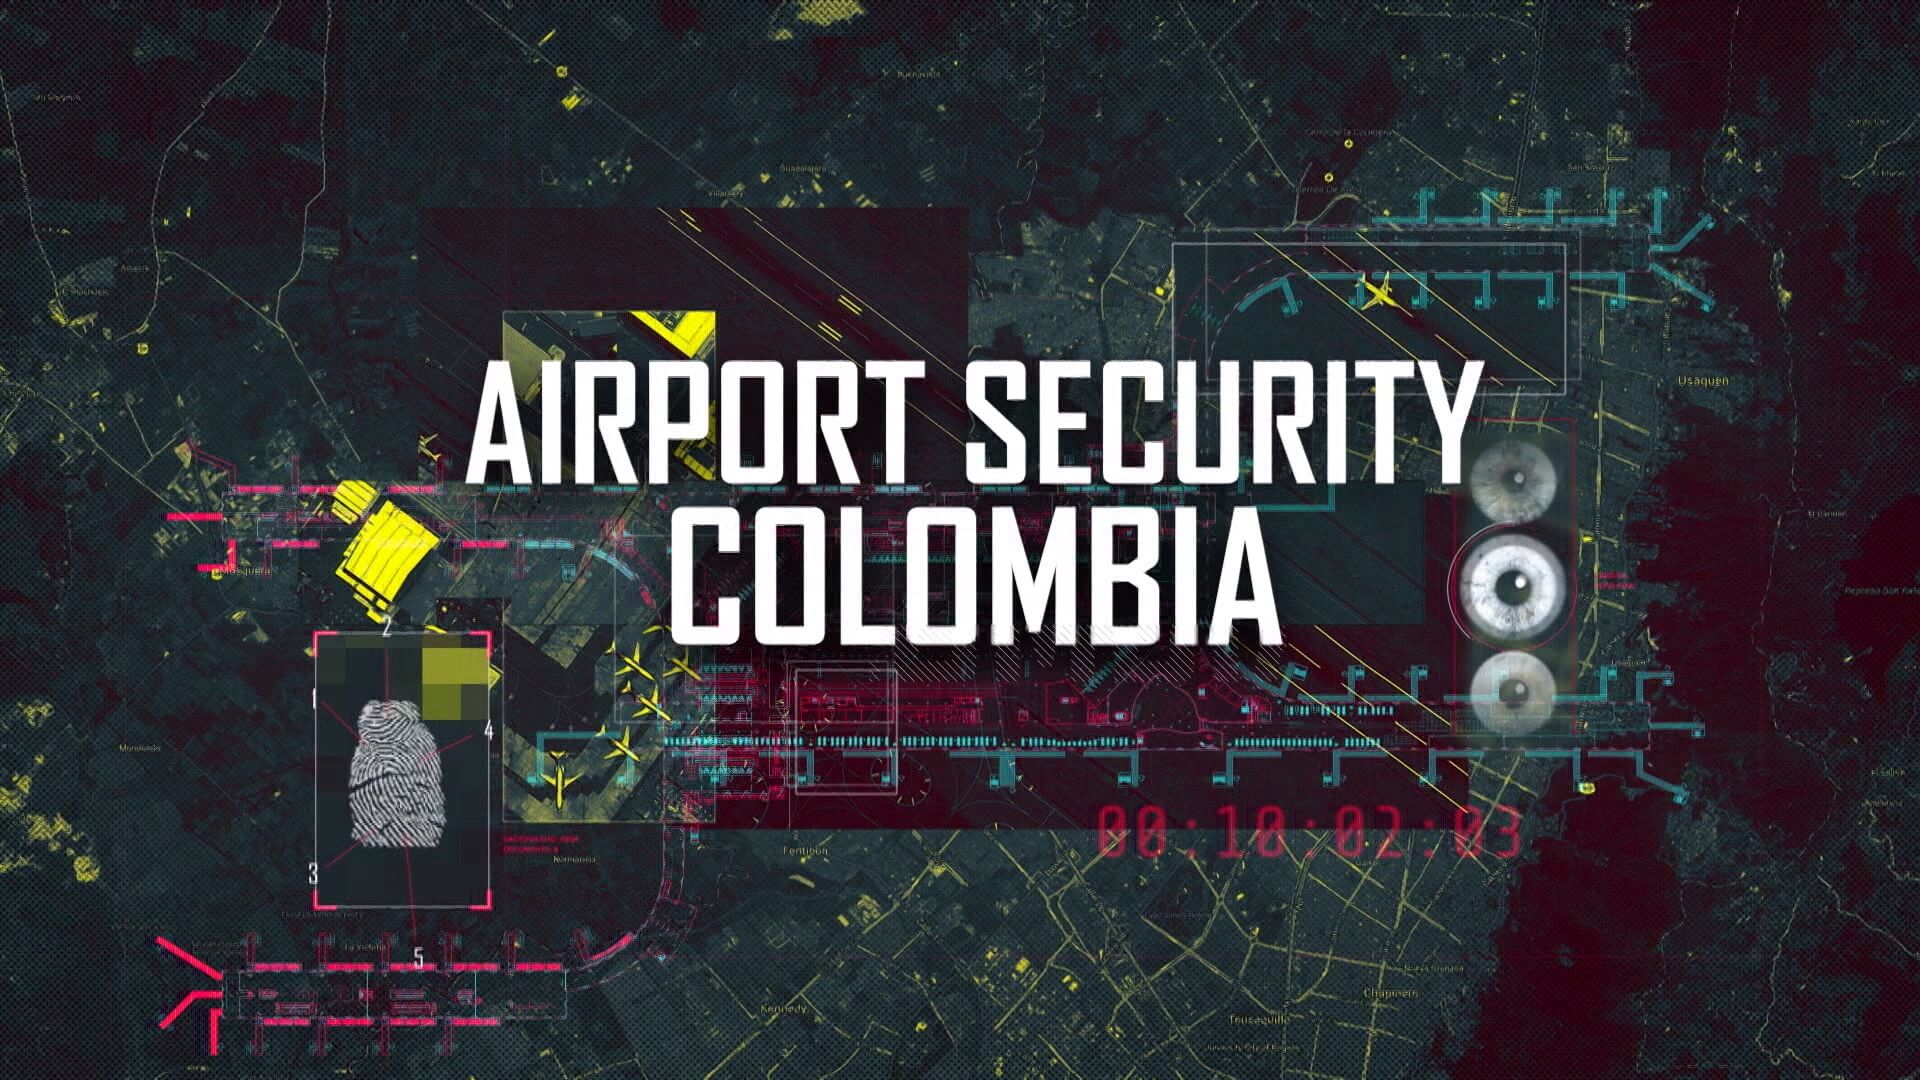 Die Bildgestalten synchronisieren die TV Serie Airport Security